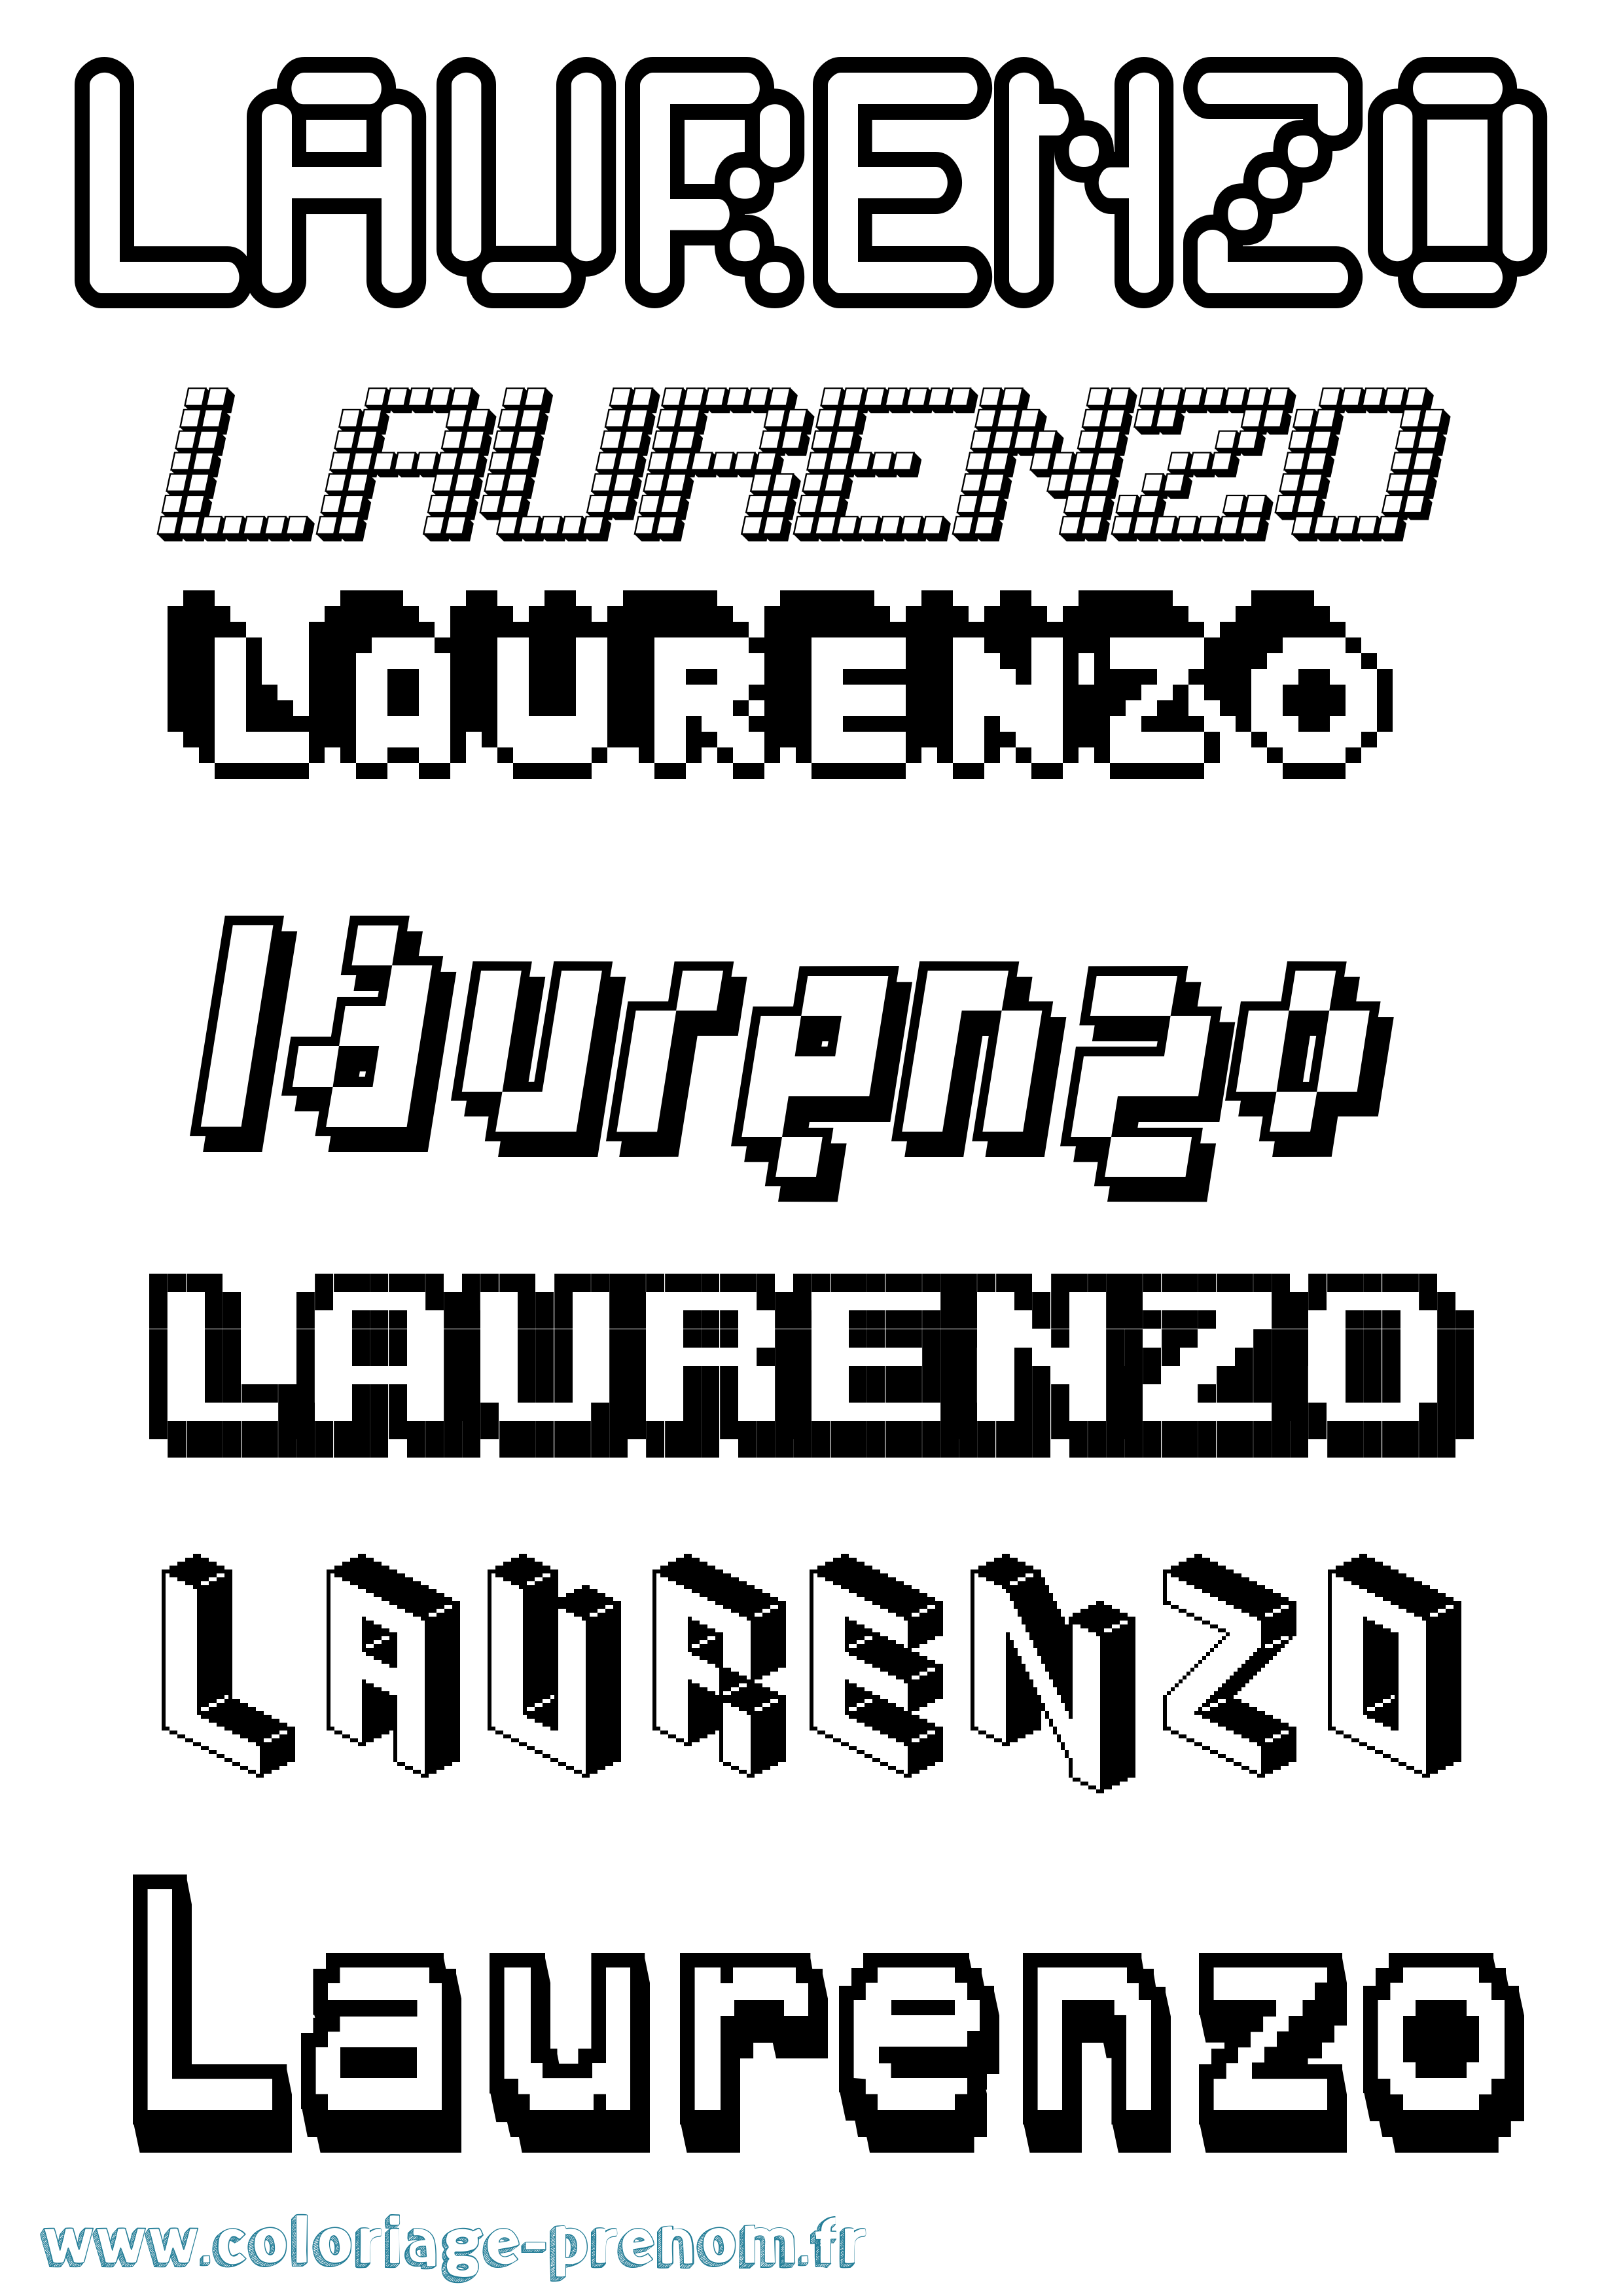 Coloriage prénom Laurenzo Pixel